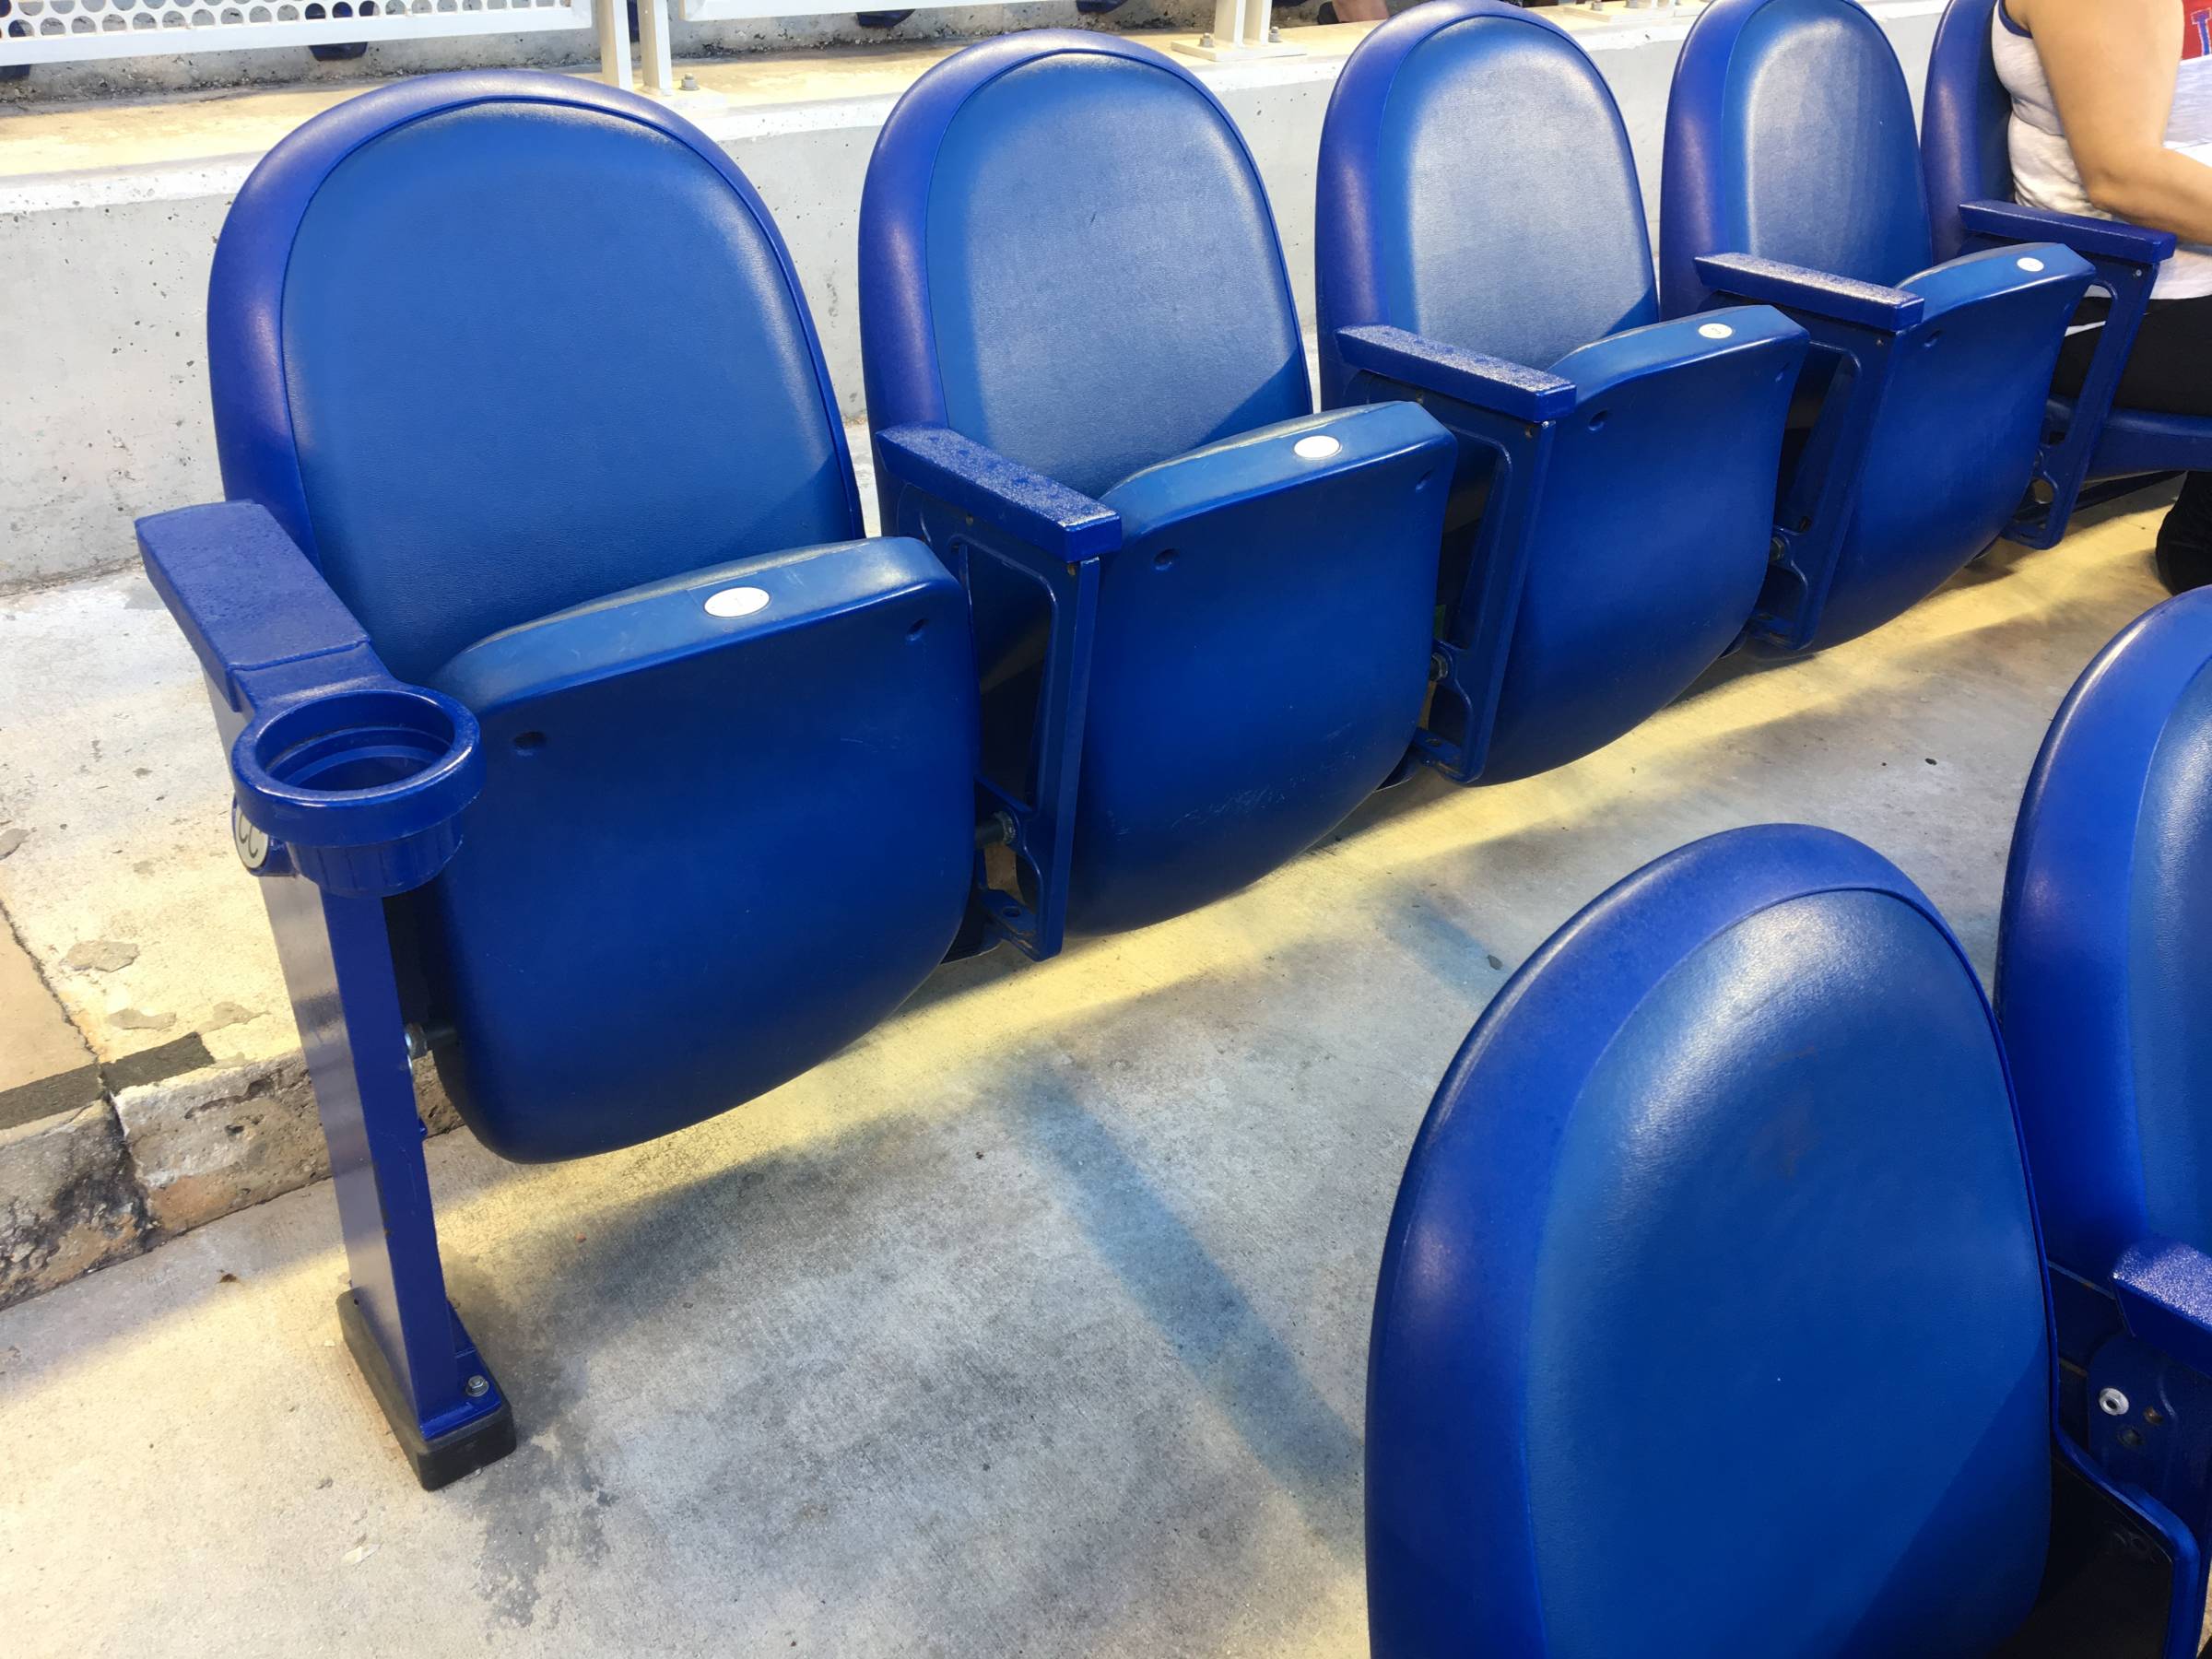 Dugout seats at Marlins Park